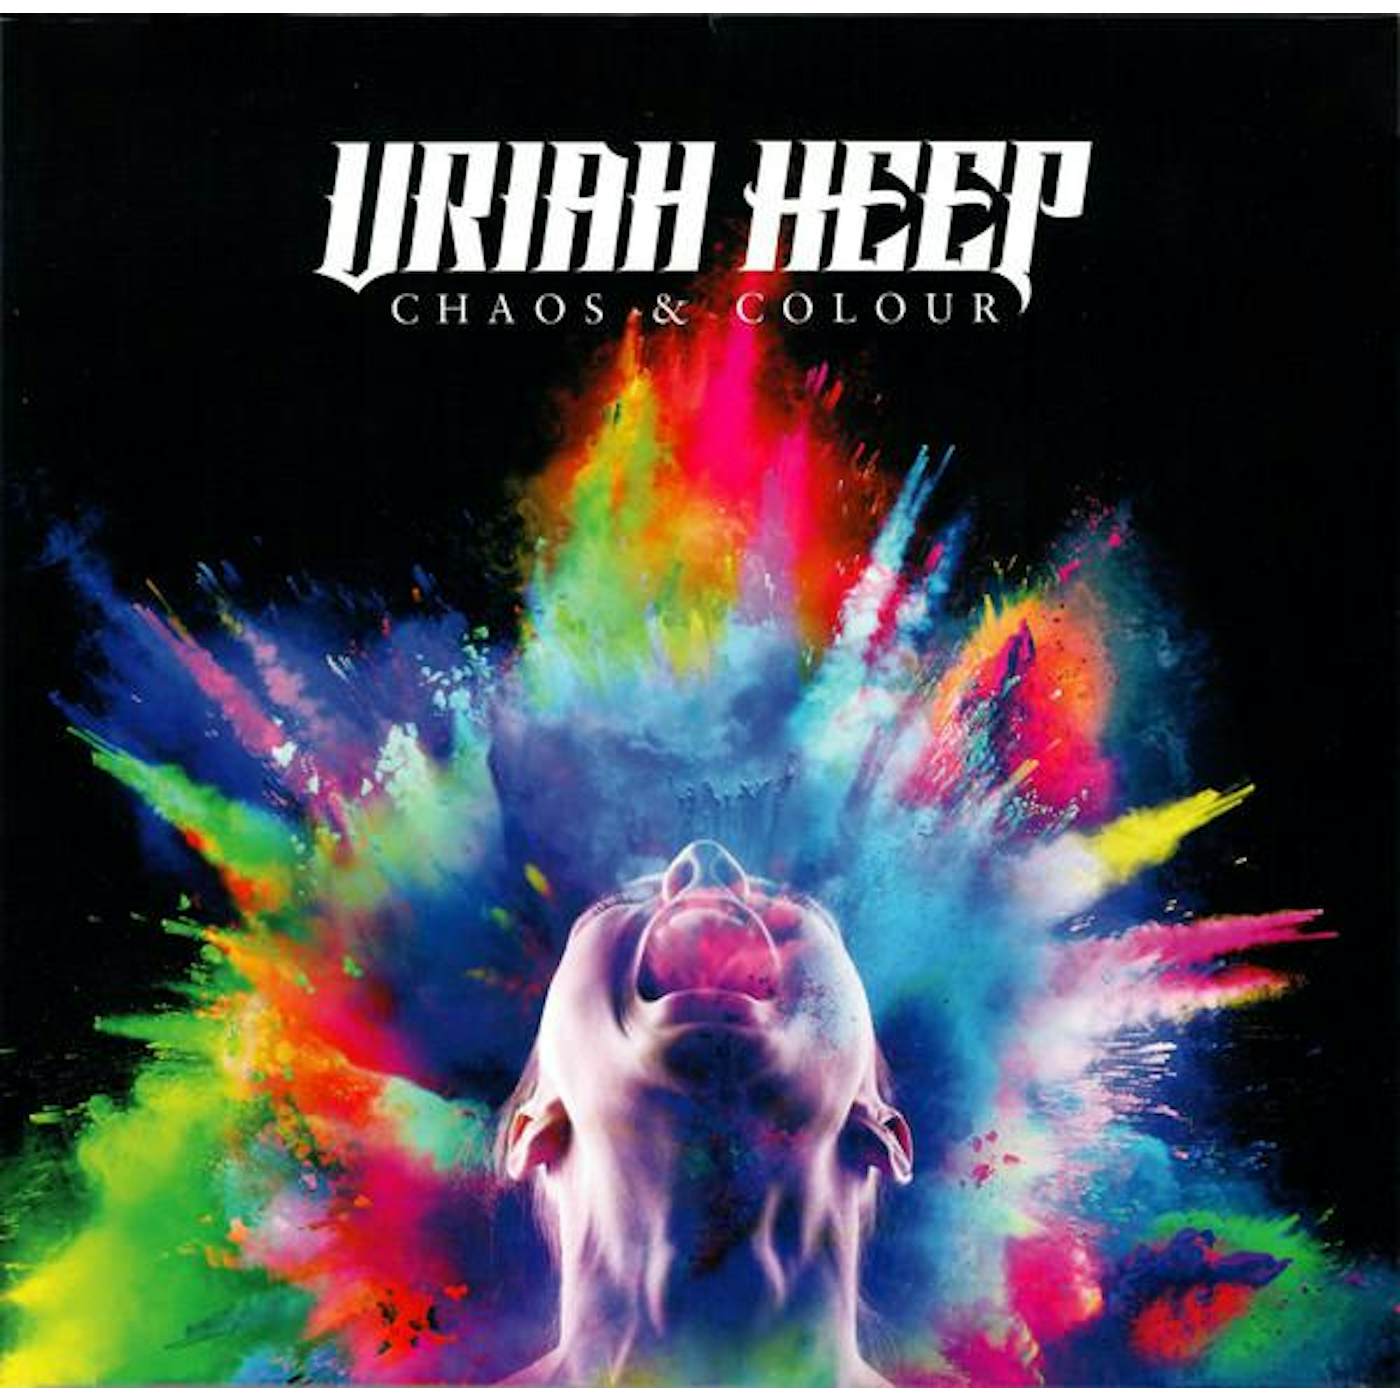 Uriah Heep Chaos & Colour Vinyl Record